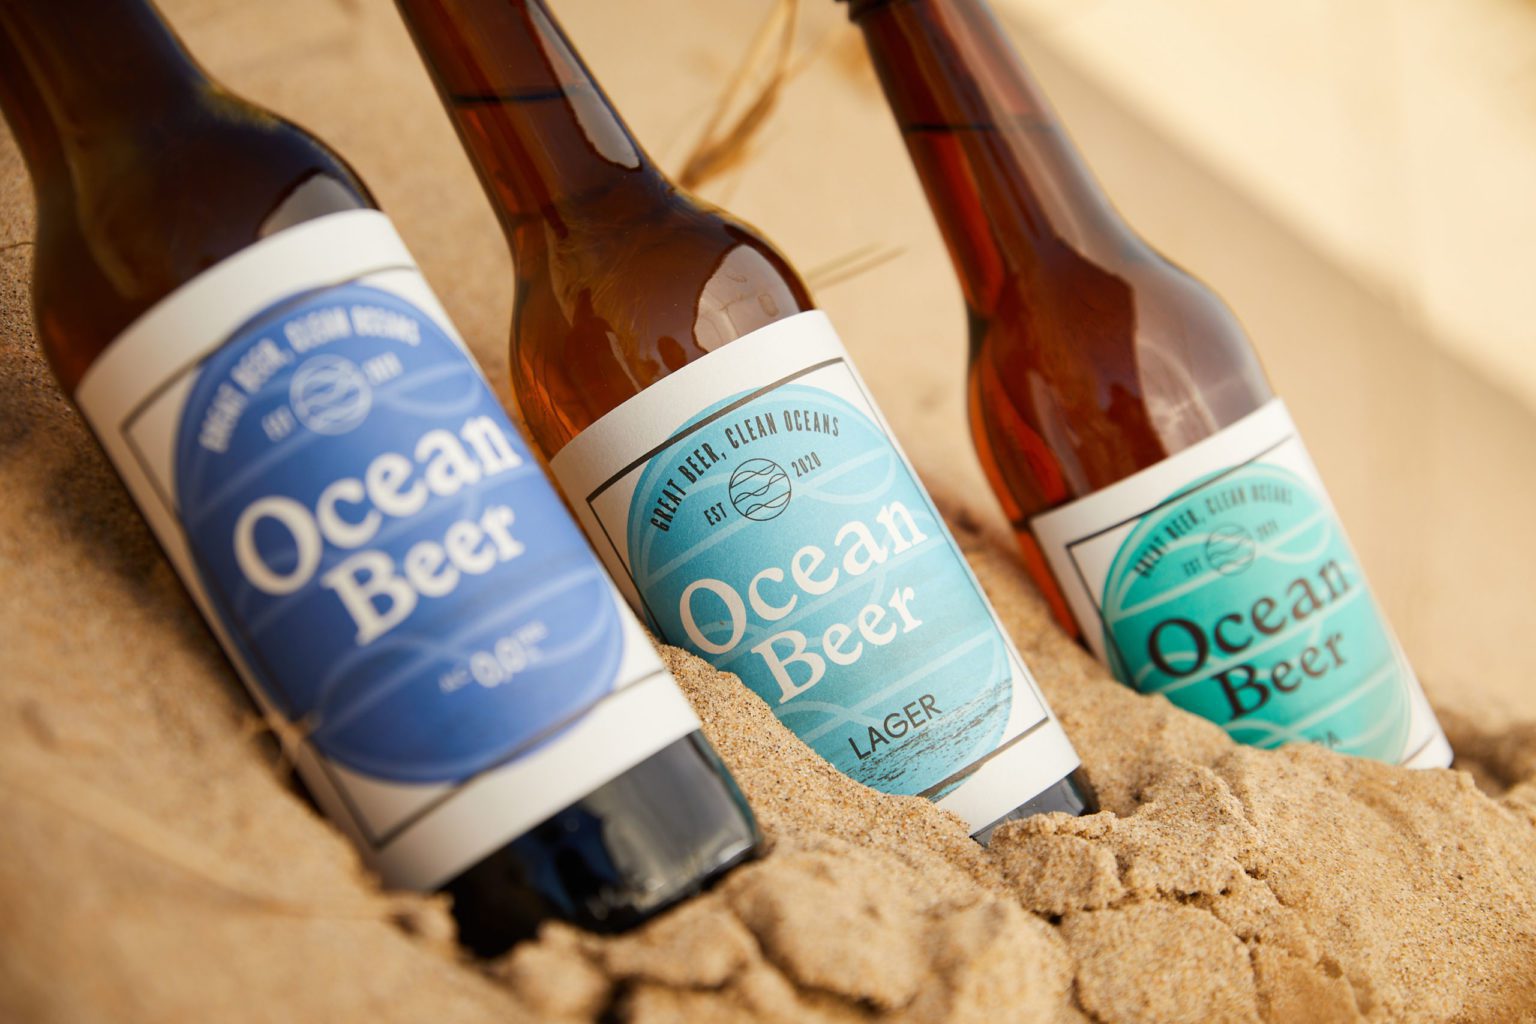 Ocean Beer